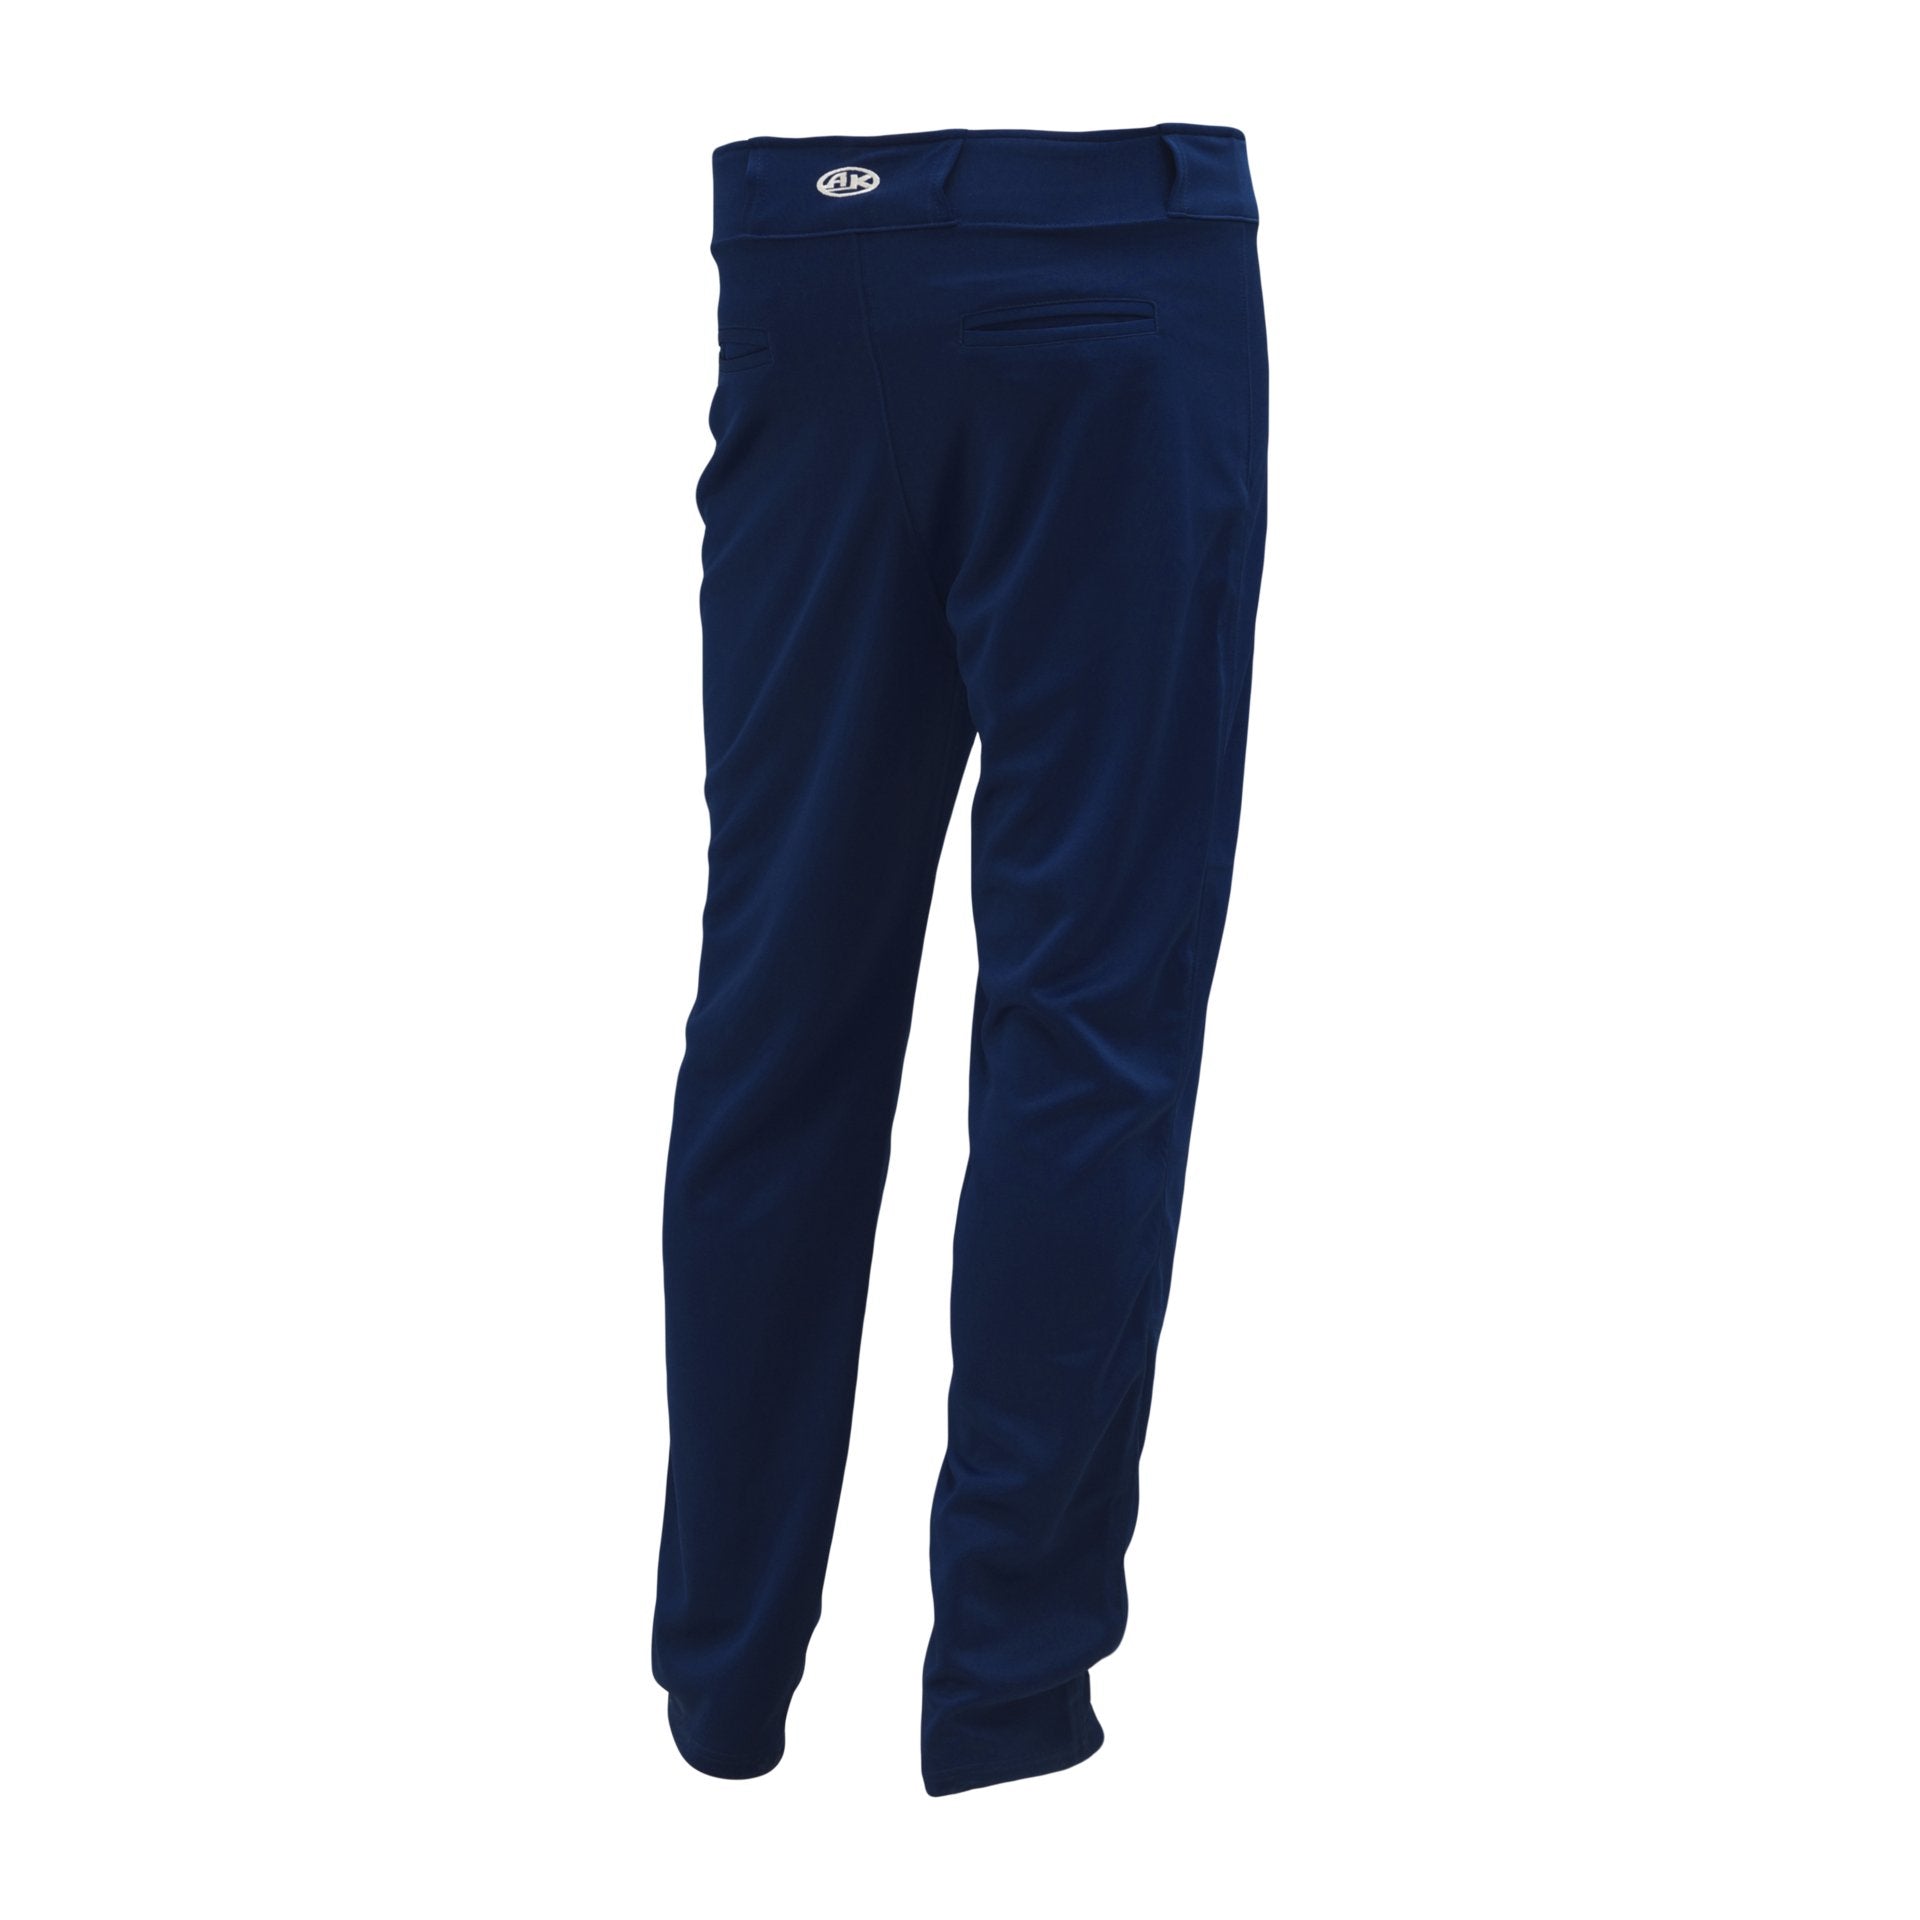 Premium Baseball Pants, Hemmed Bottom, Navy, ba1390-004, back